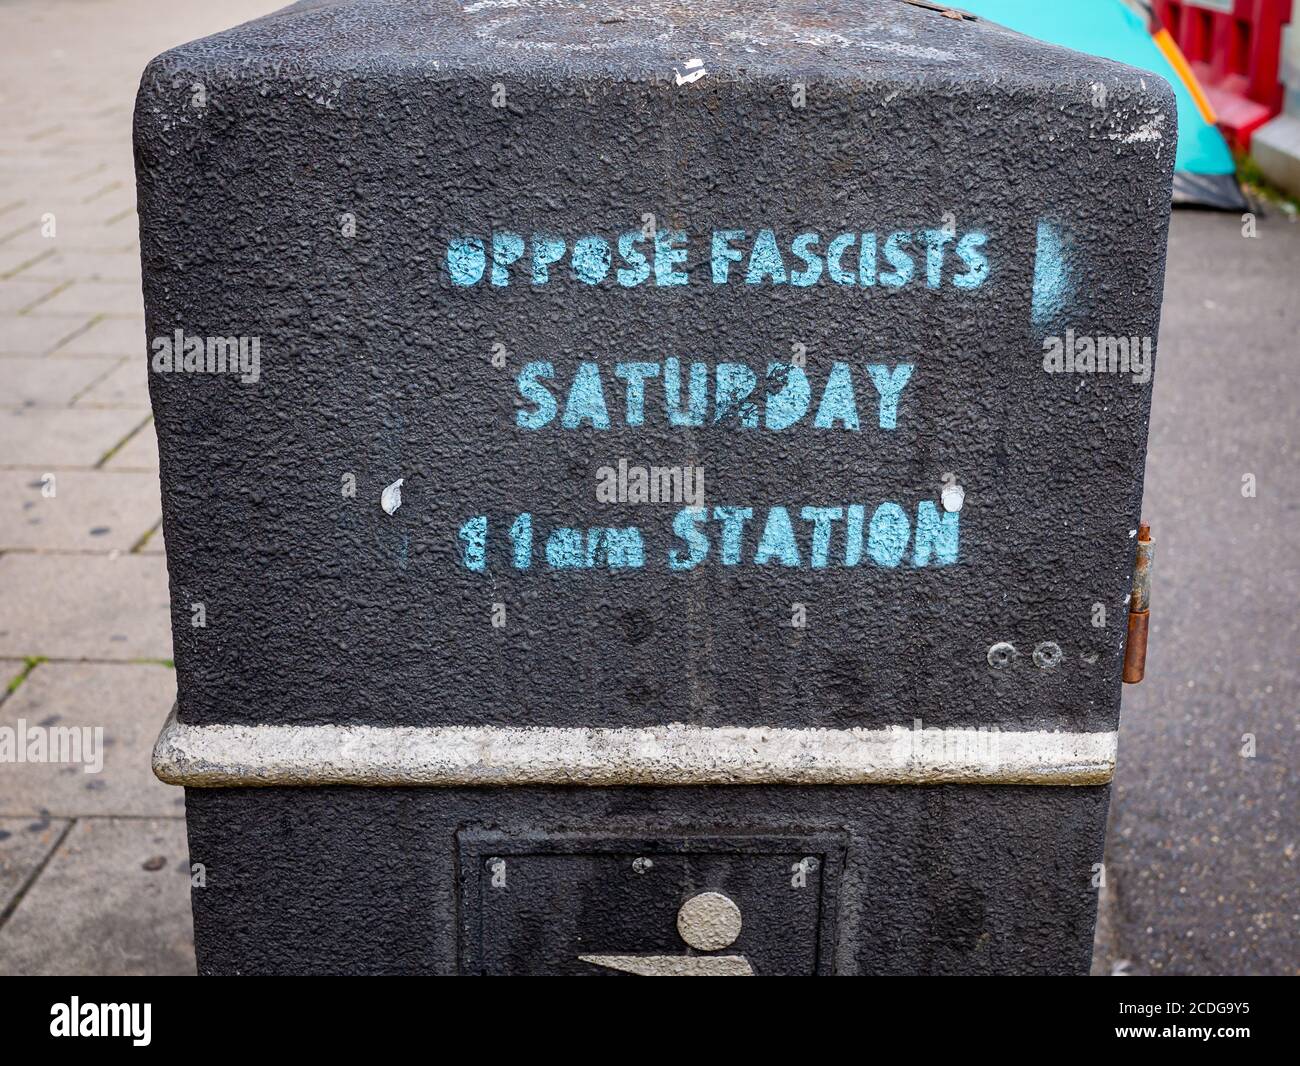 Oposición Fascistas, sábado, estación, estarcido en un cubo de Brighton Foto de stock